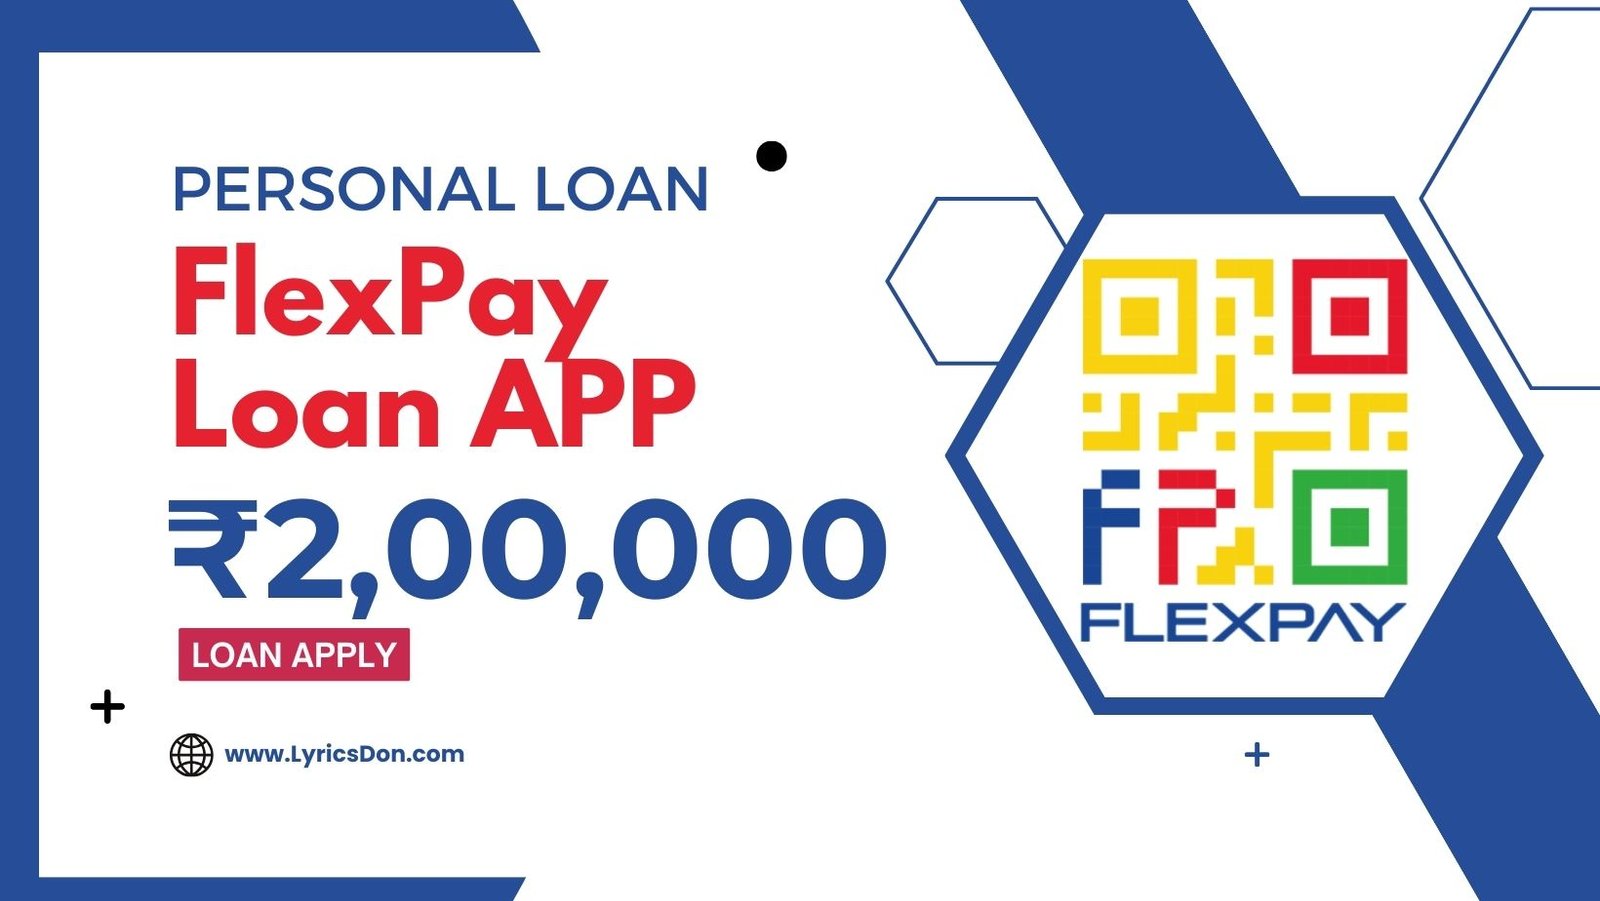 FlexPay Loan App Loan Amount